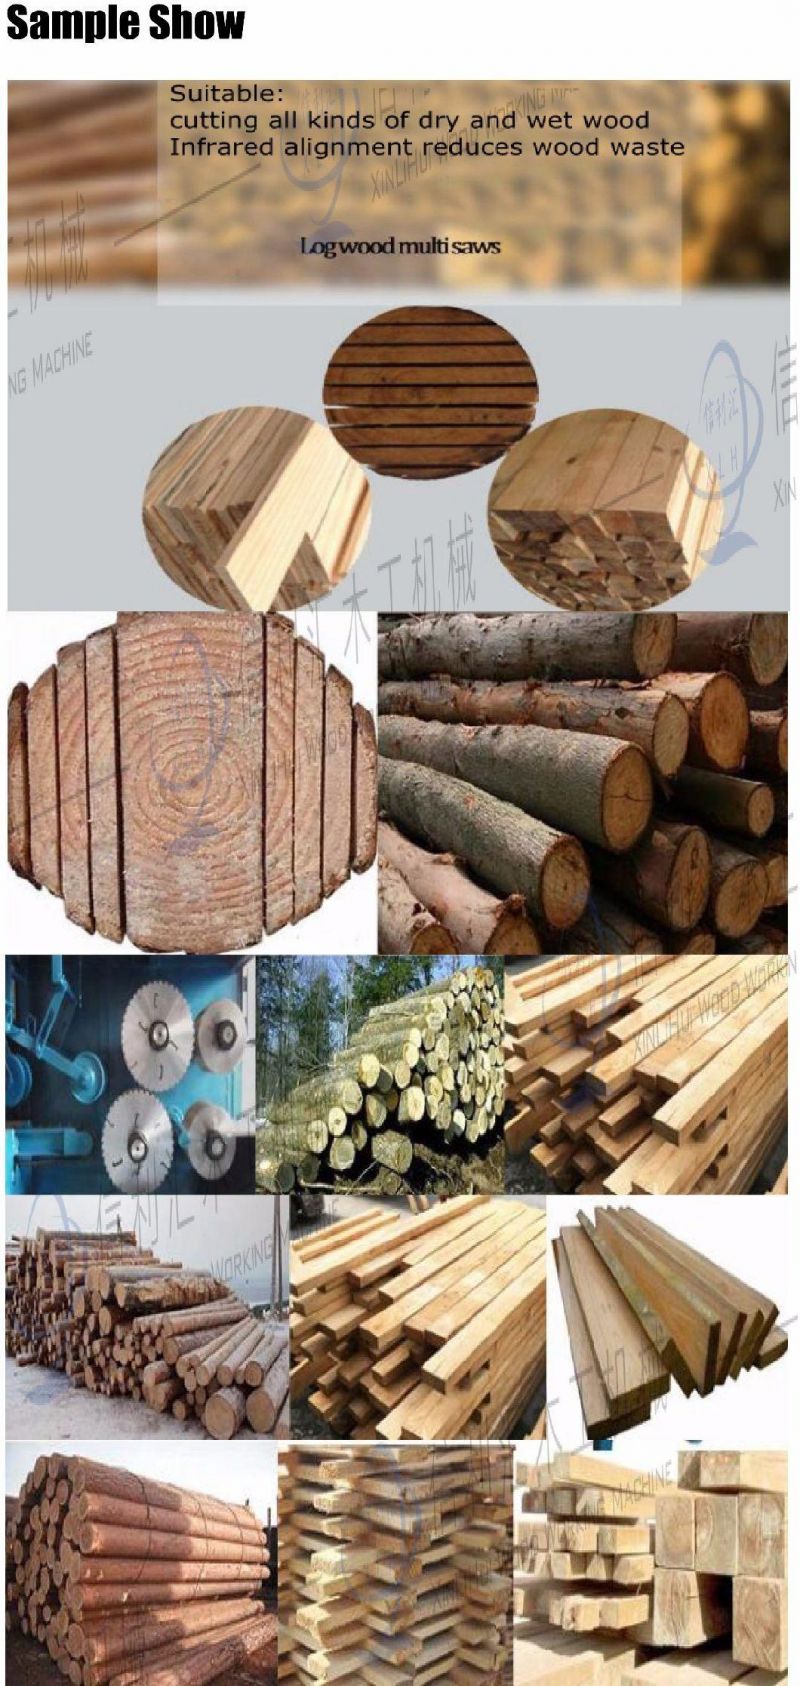 Large Horizontal Round Log Multi-Blade Saw, Log Cutting Board Saw, Round Log Square Saw, Various Types of Multi-Blade Saw for Cork Wood